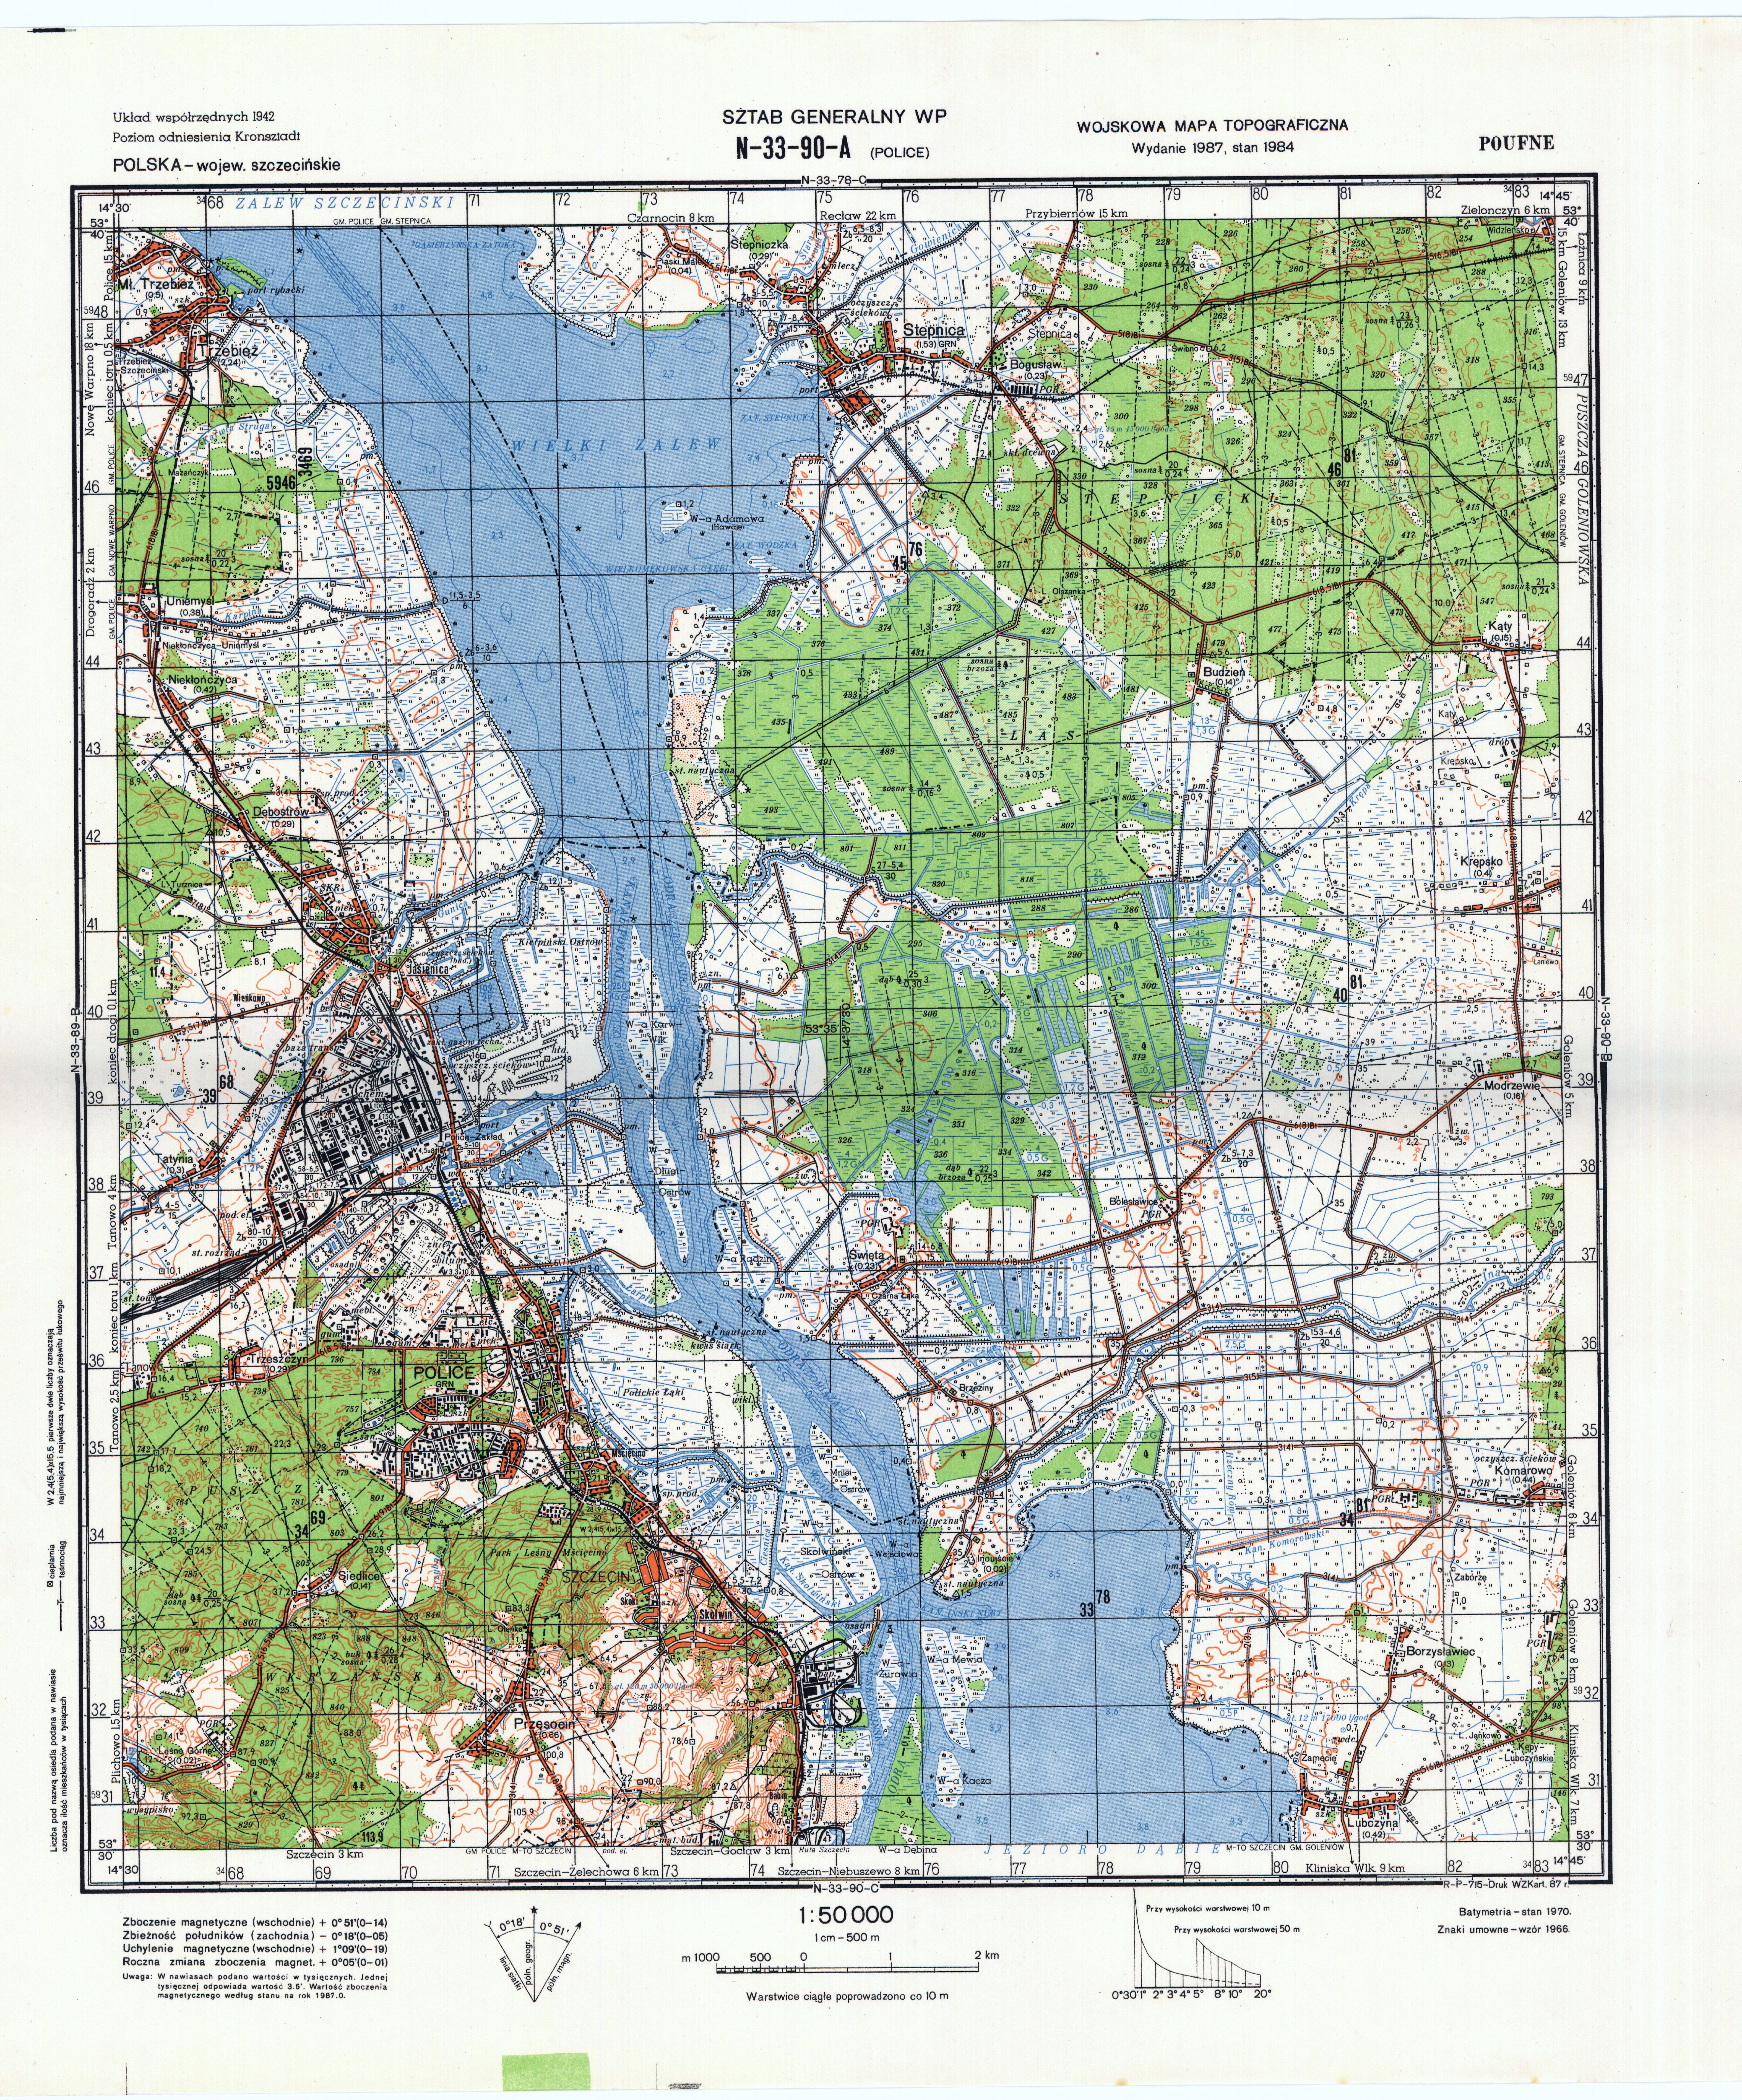 Mapy topograficzne LWP 1_50 000 - N-33-90-A_POLICE_1987.jpg